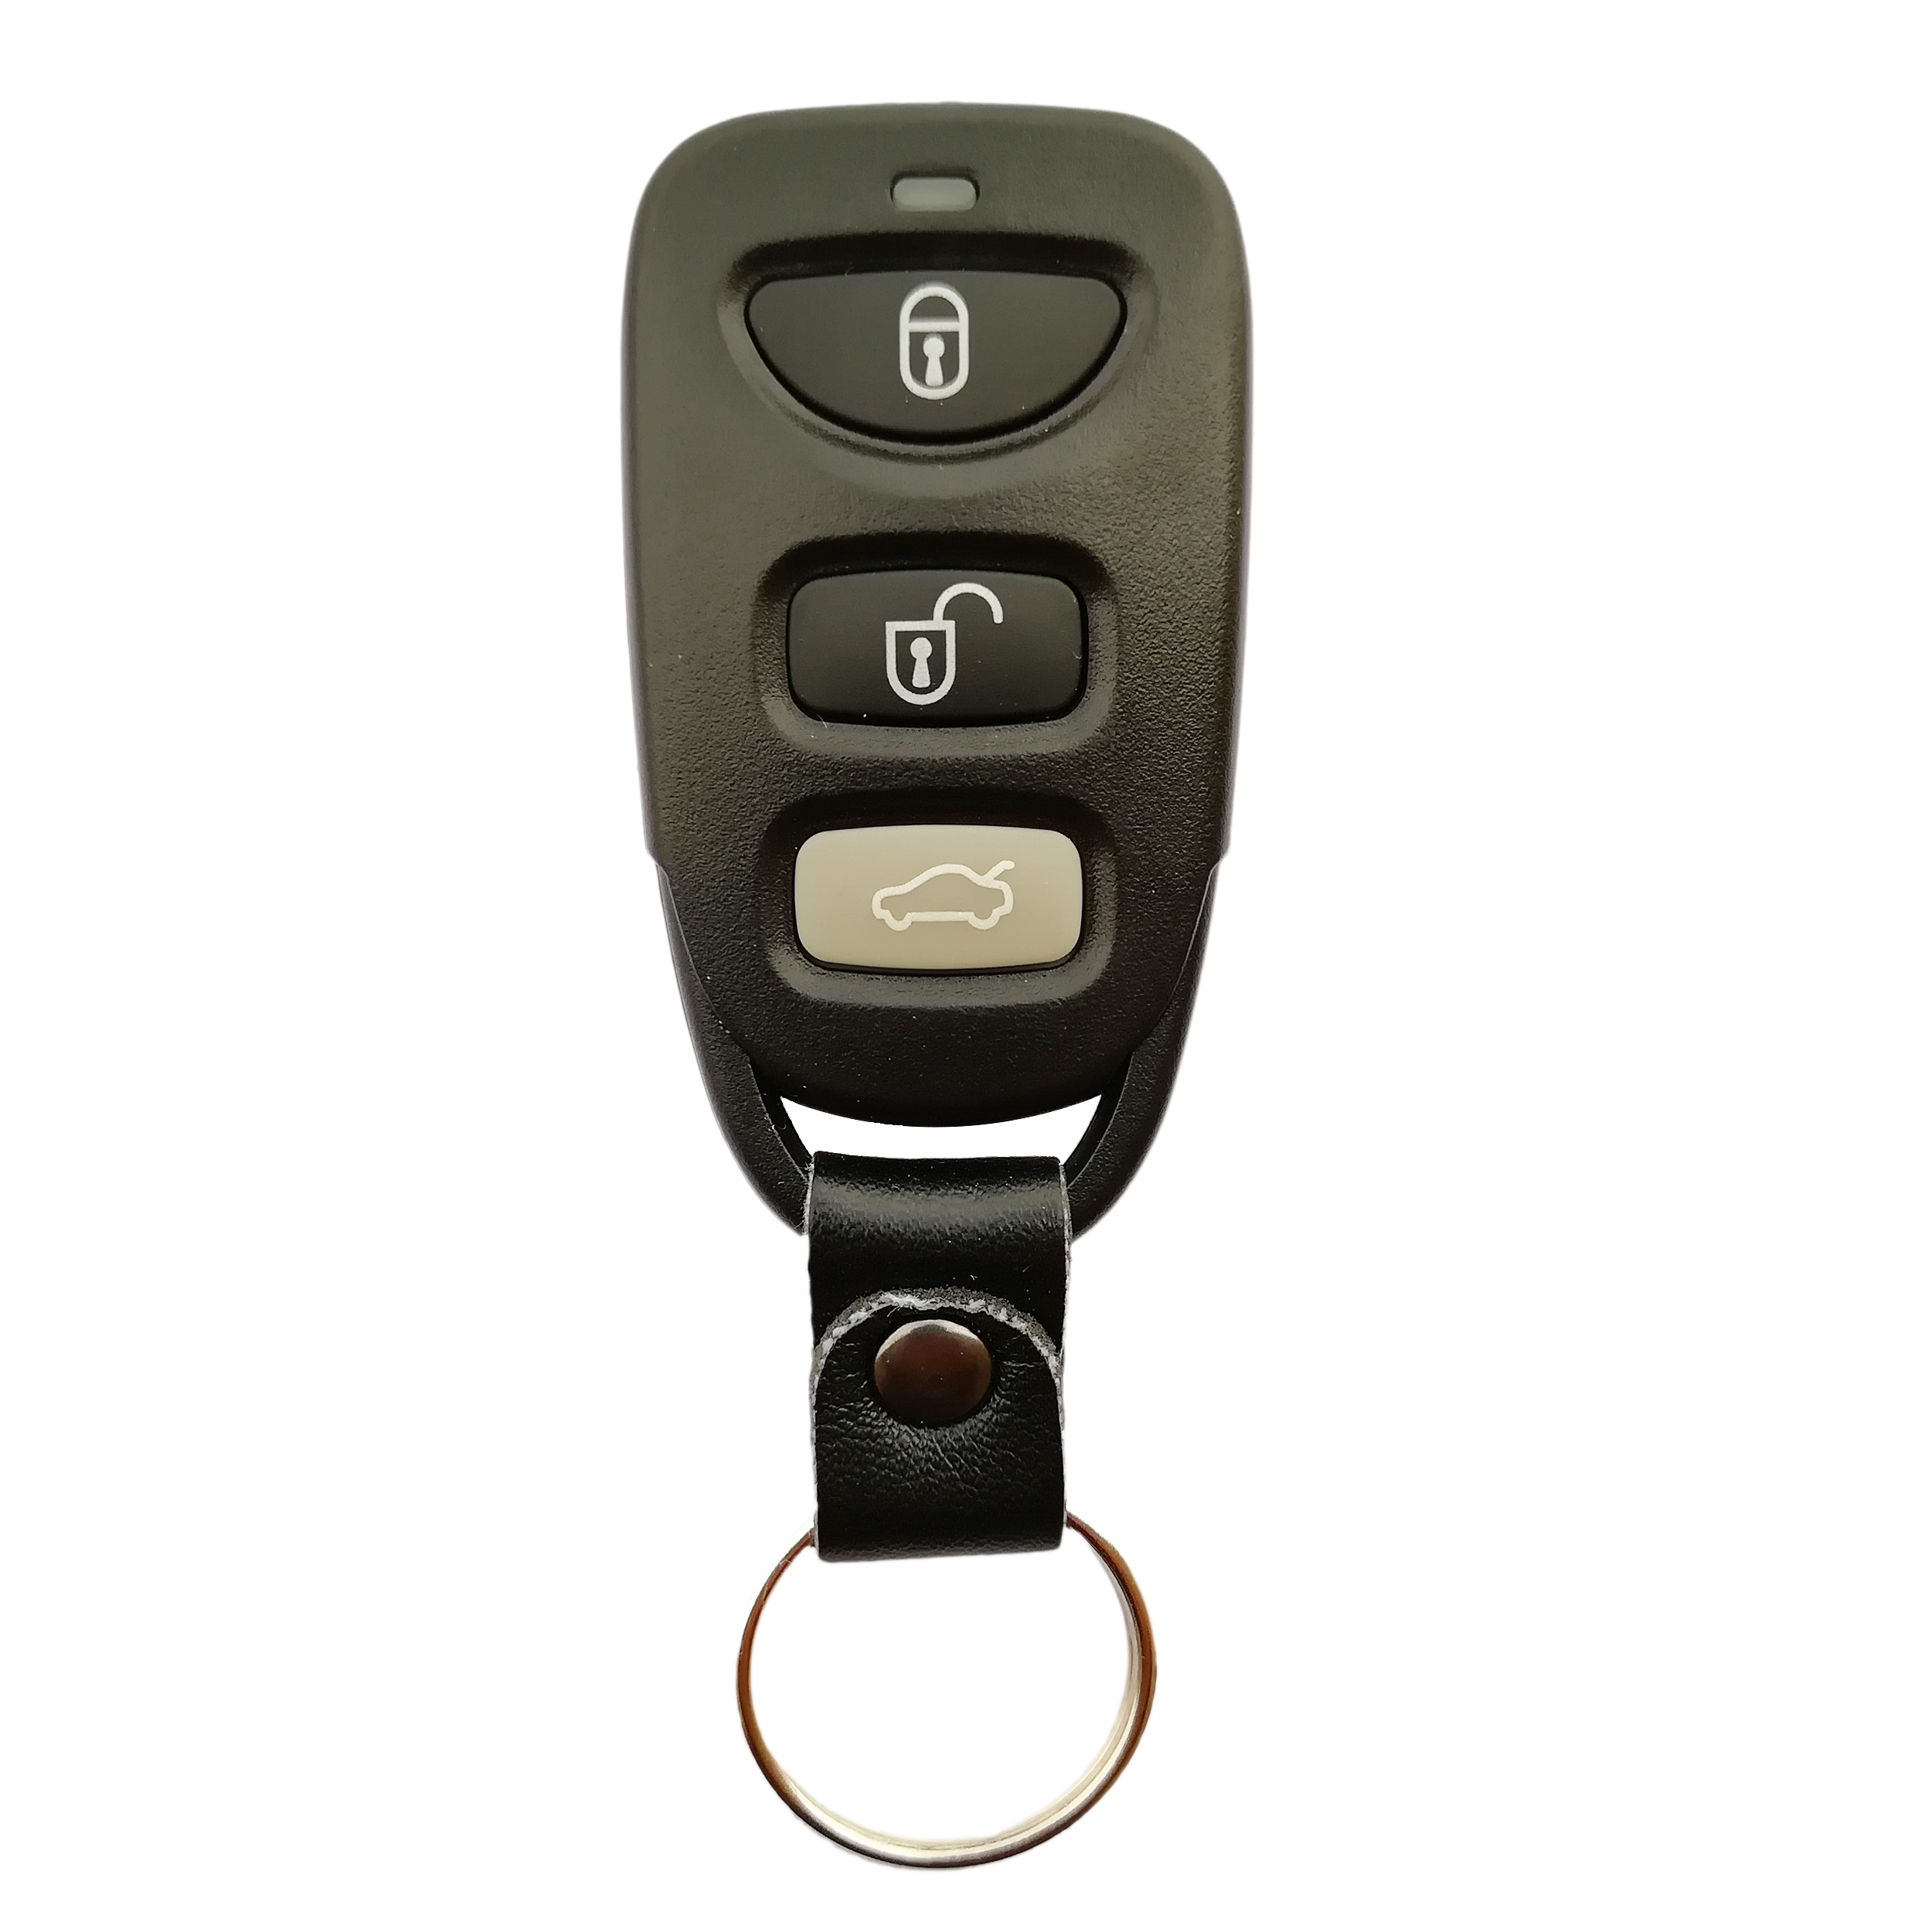 ریموت قفل مرکزی خودرو کد 07 مناسب برای مزدا3